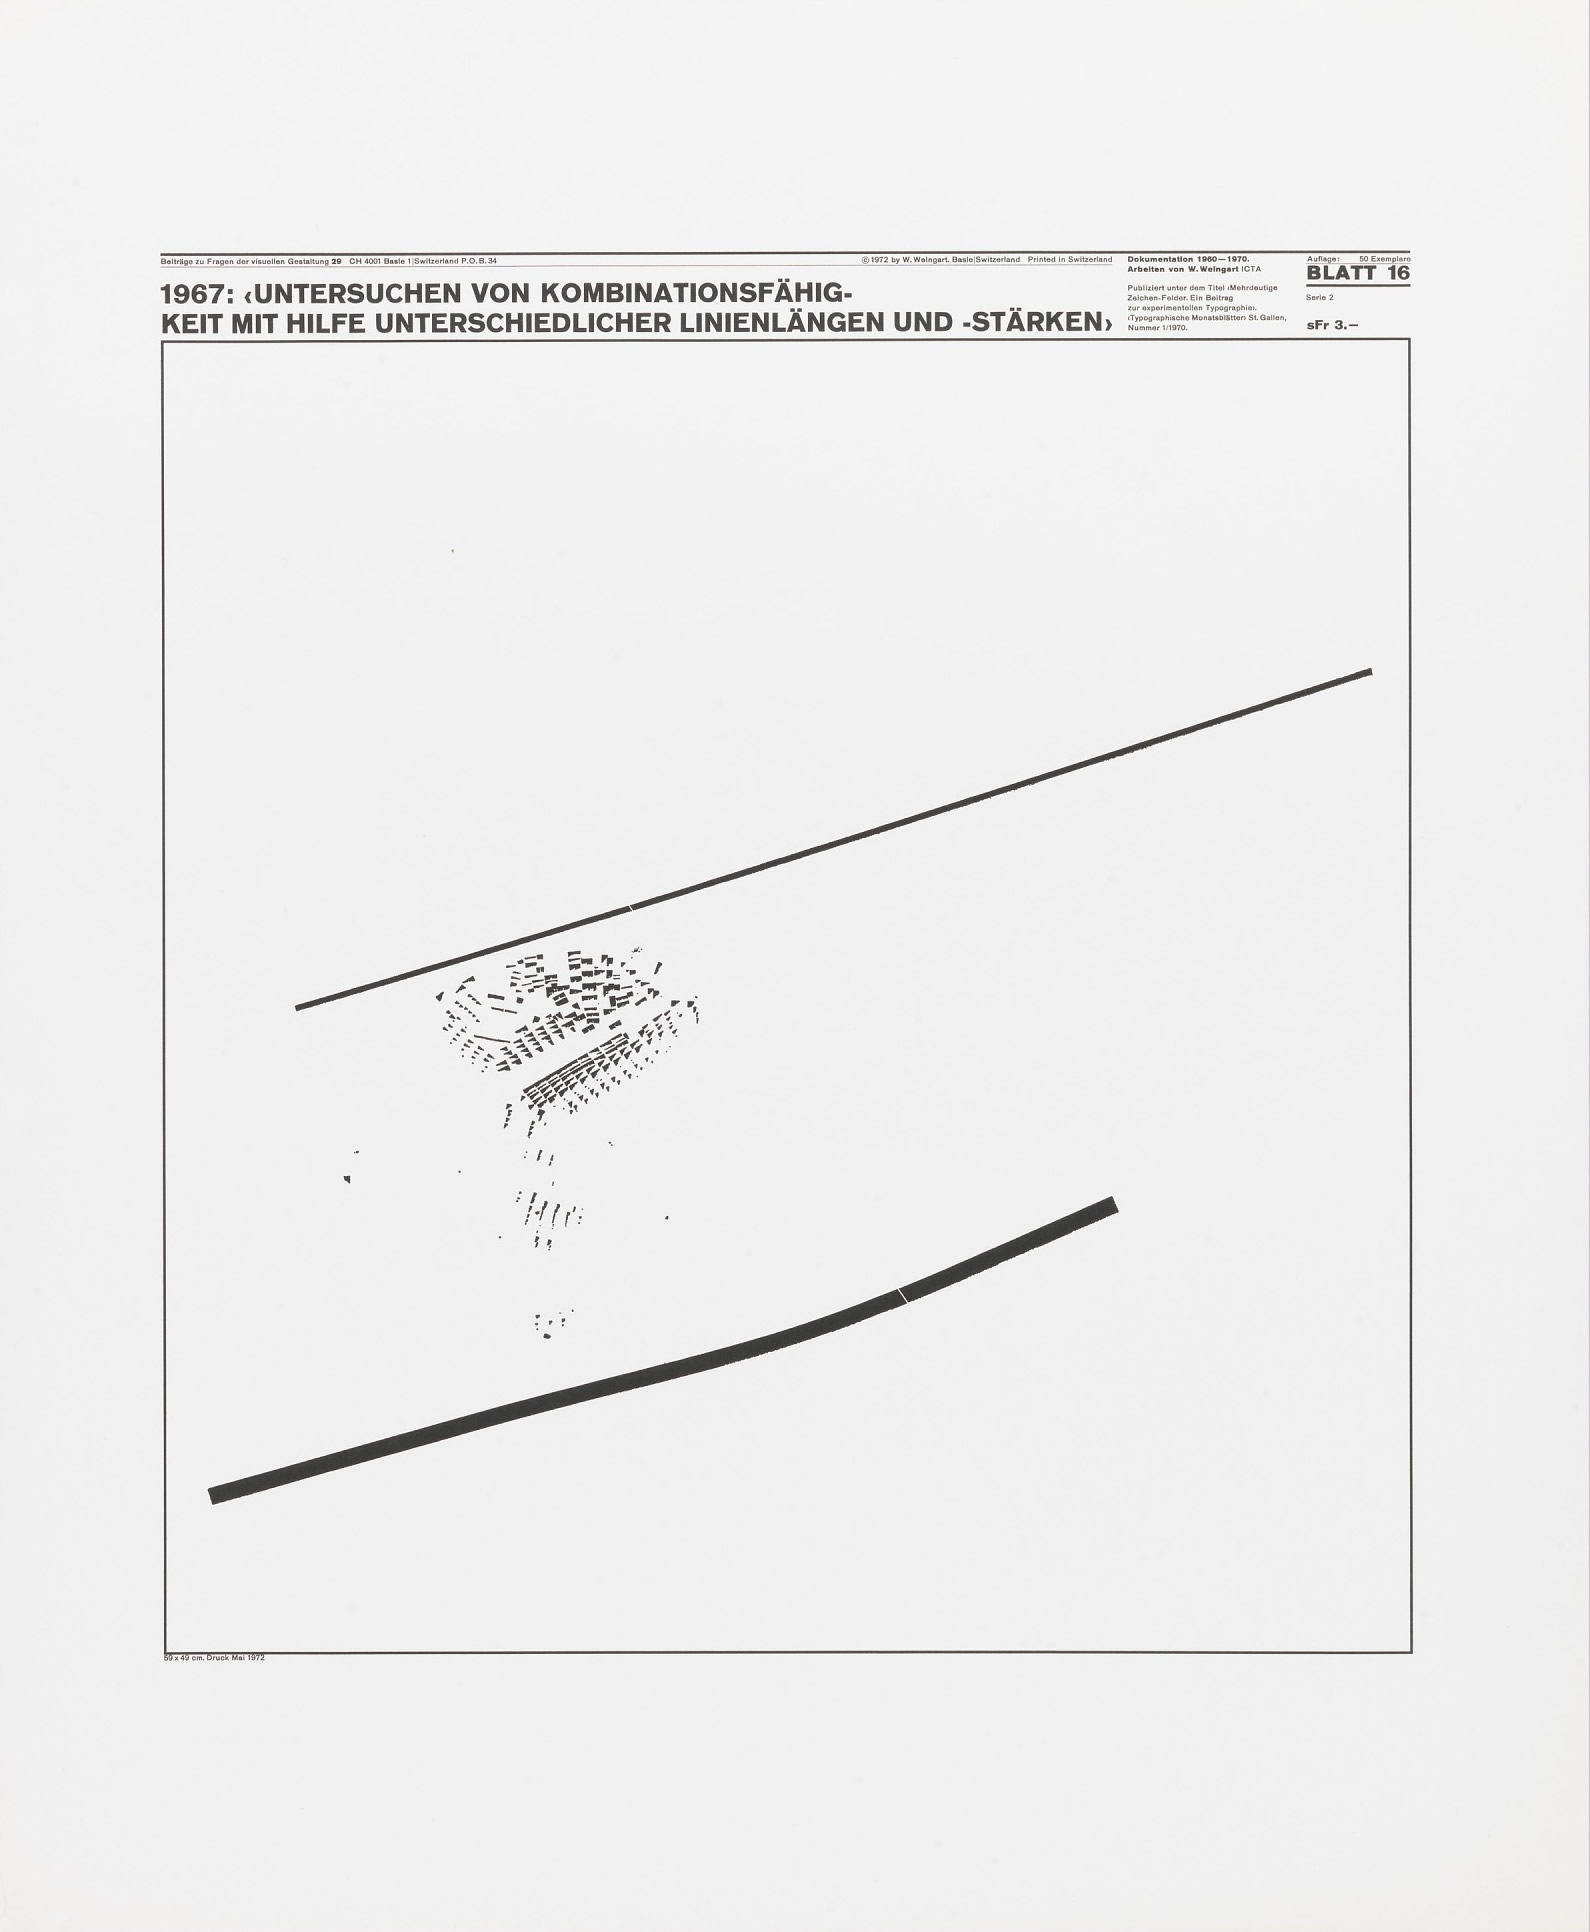 Wolfgang Weingart: Beiträge zu Fragen der visuellen Gestaltung 29, Blatt 16 from the portfolio Dokumentation 1960—1970, Arbeiten von W. Weingart, Designed 1967. Lithograph. (58.74 x 48.9 cm)